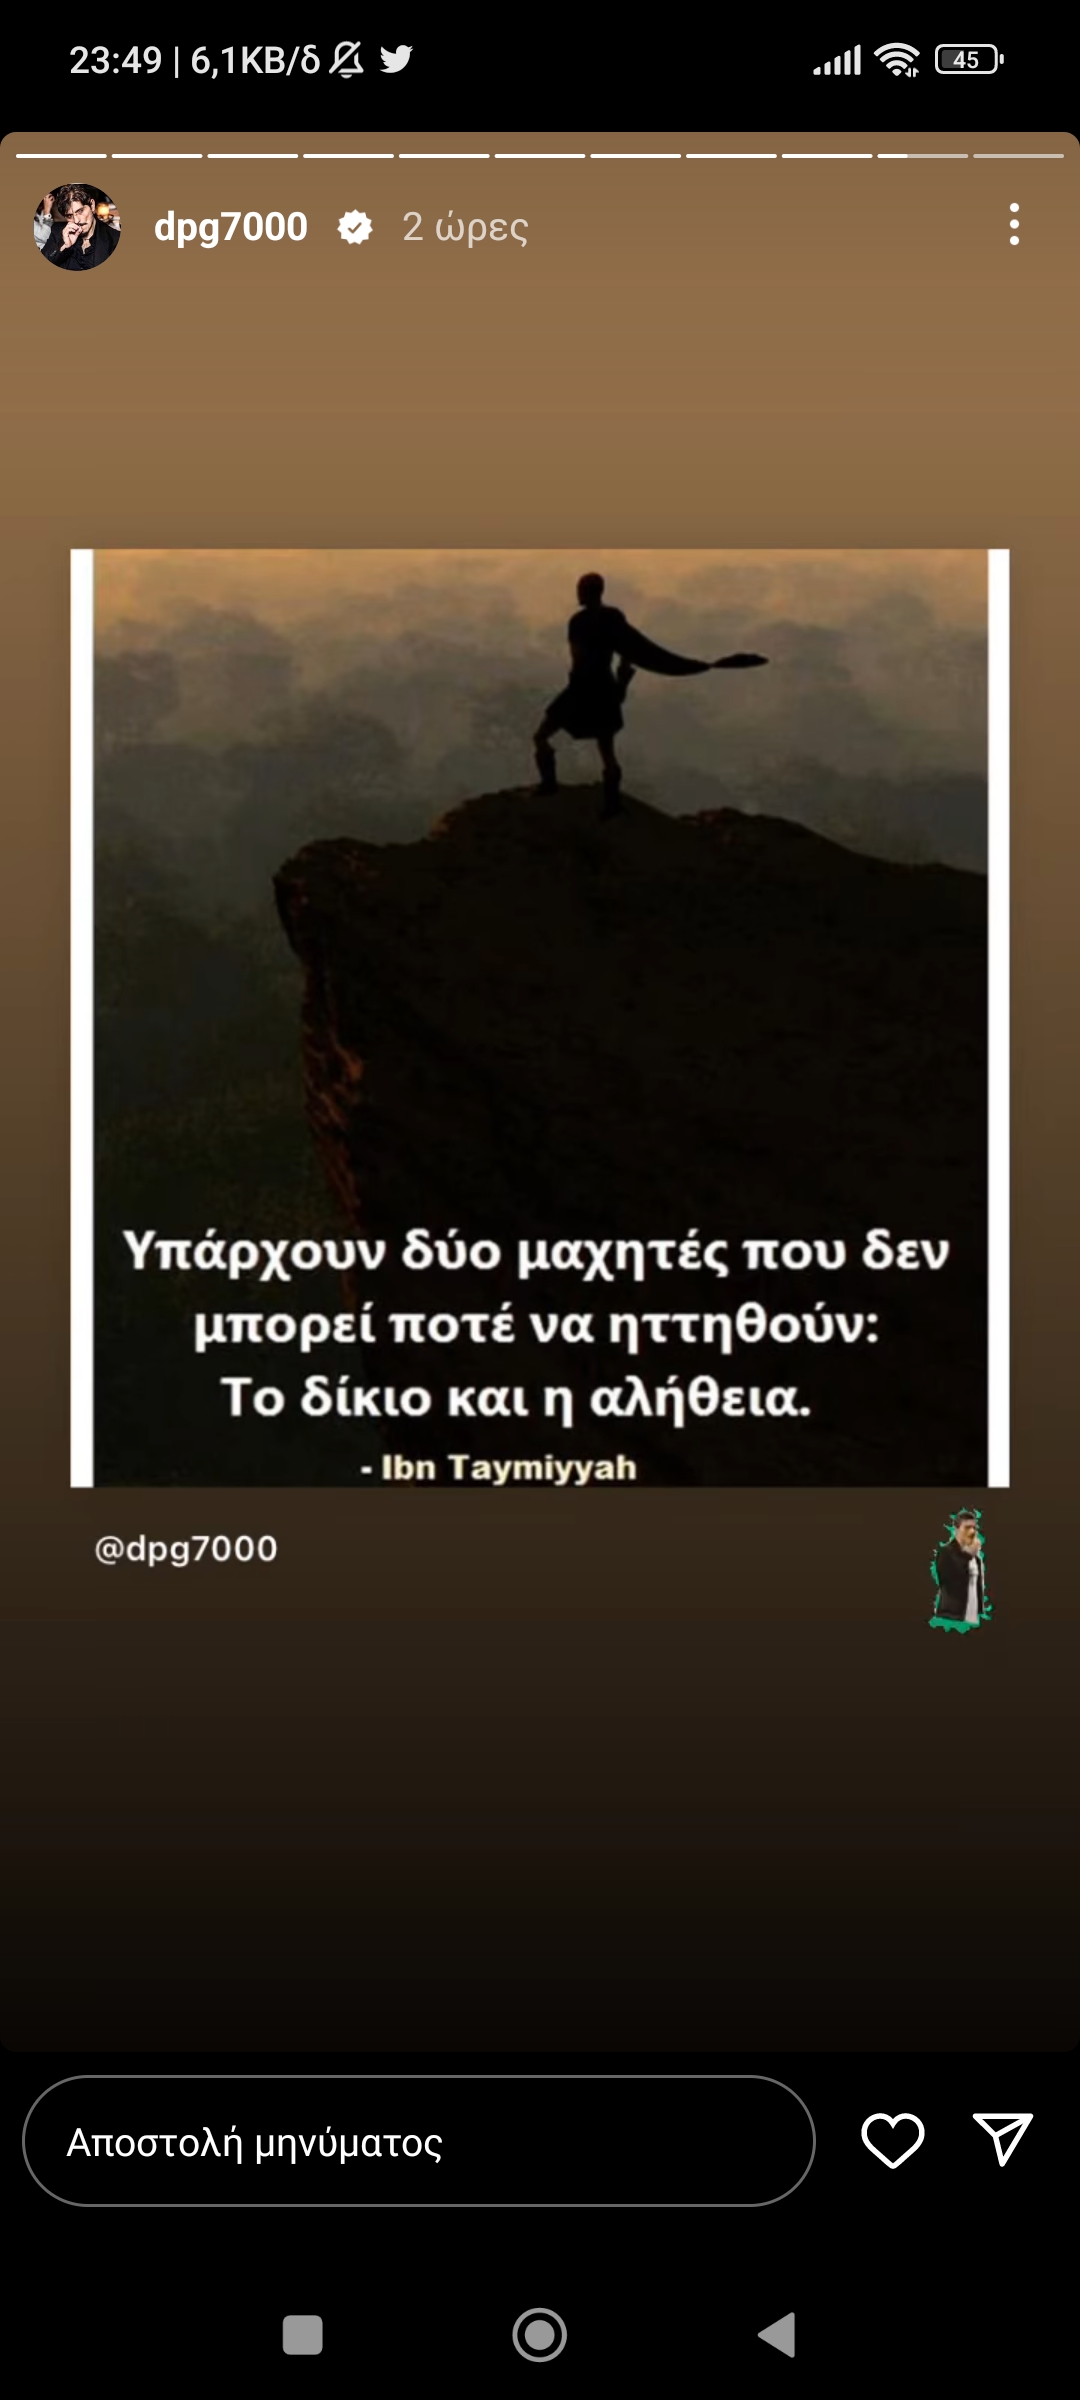 Γιαννακόπουλος: «Το δίκιο και η αλήθεια» - Νέο ξεκάθαρο μήνυμα